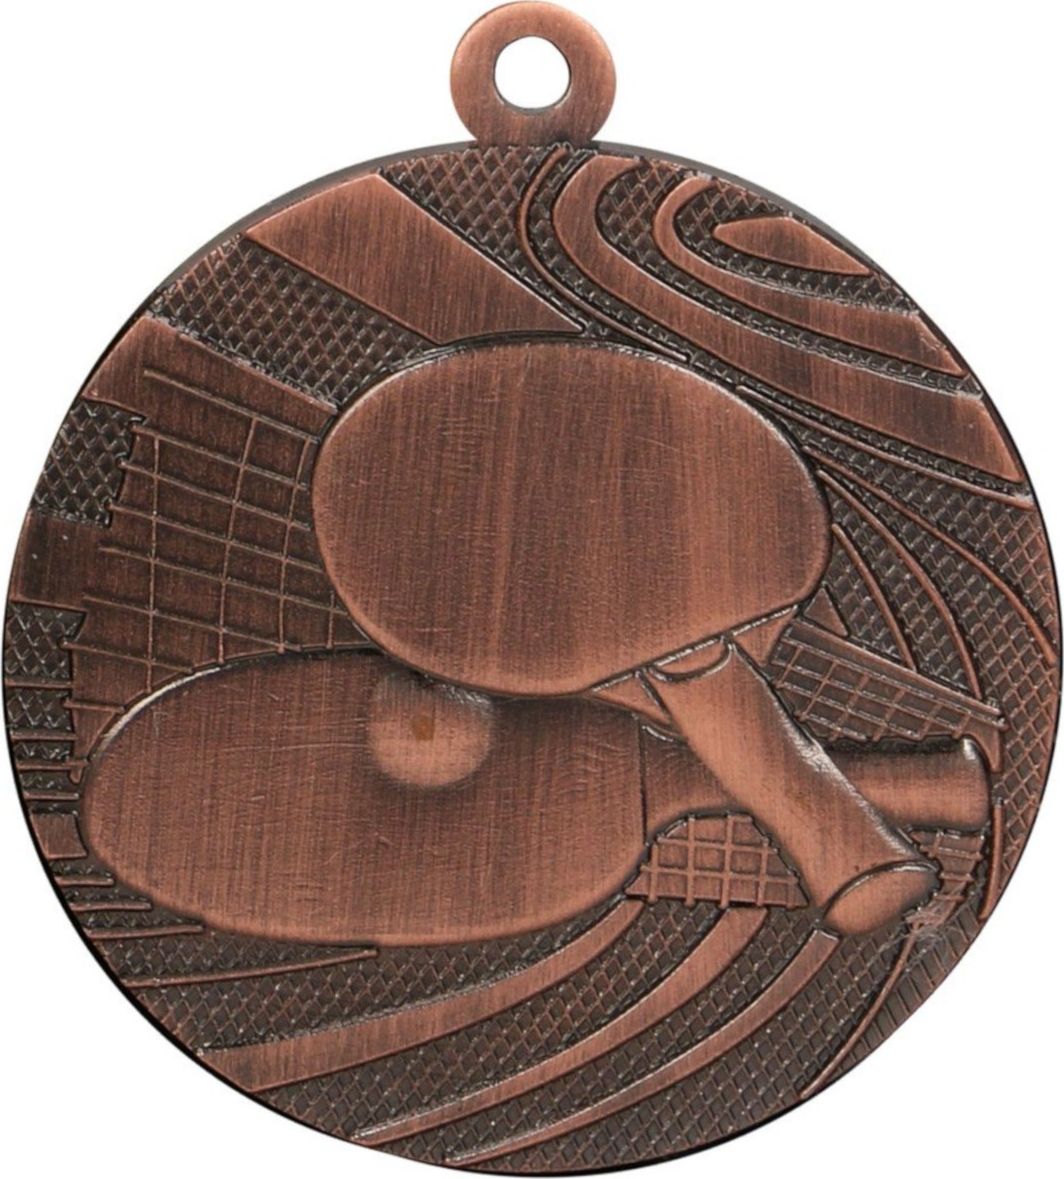 40mm medalie de bronz de tenis de masă MMC1840 / B